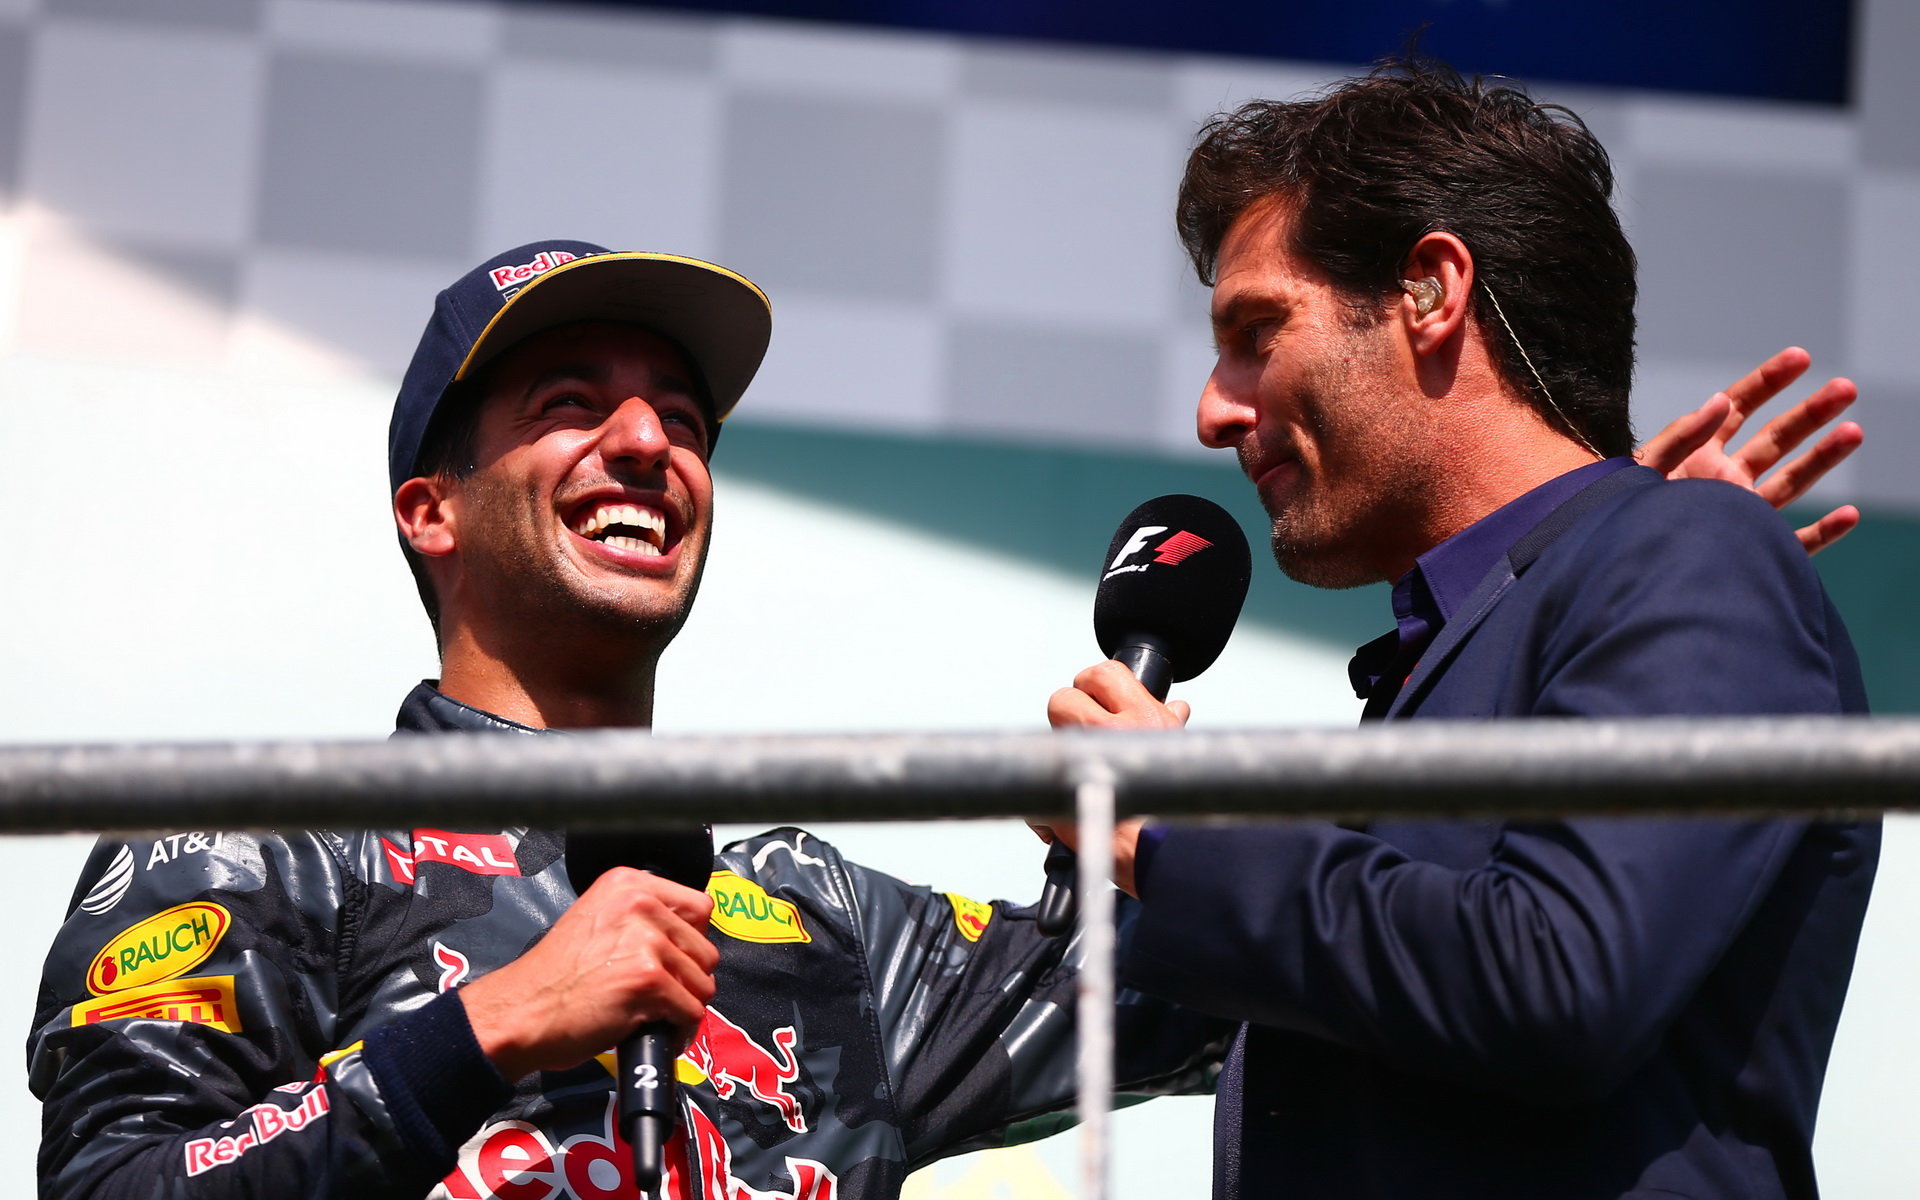 Mark Webber se občas objeví v roli moderátora na pódiích Grand Prix